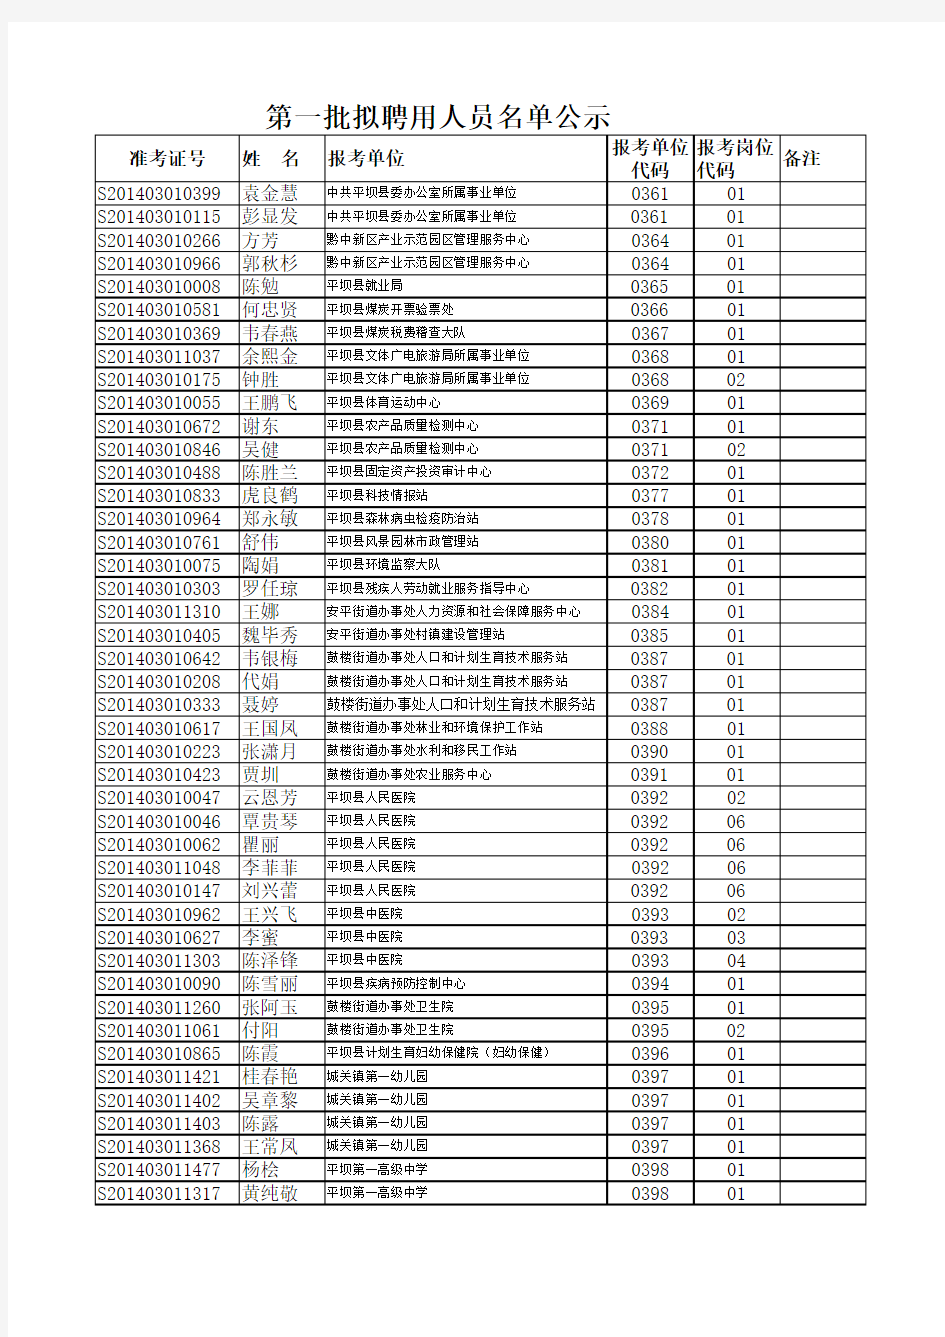 第一批拟聘用人员名单公示xls - 平坝区人民政府门户网站